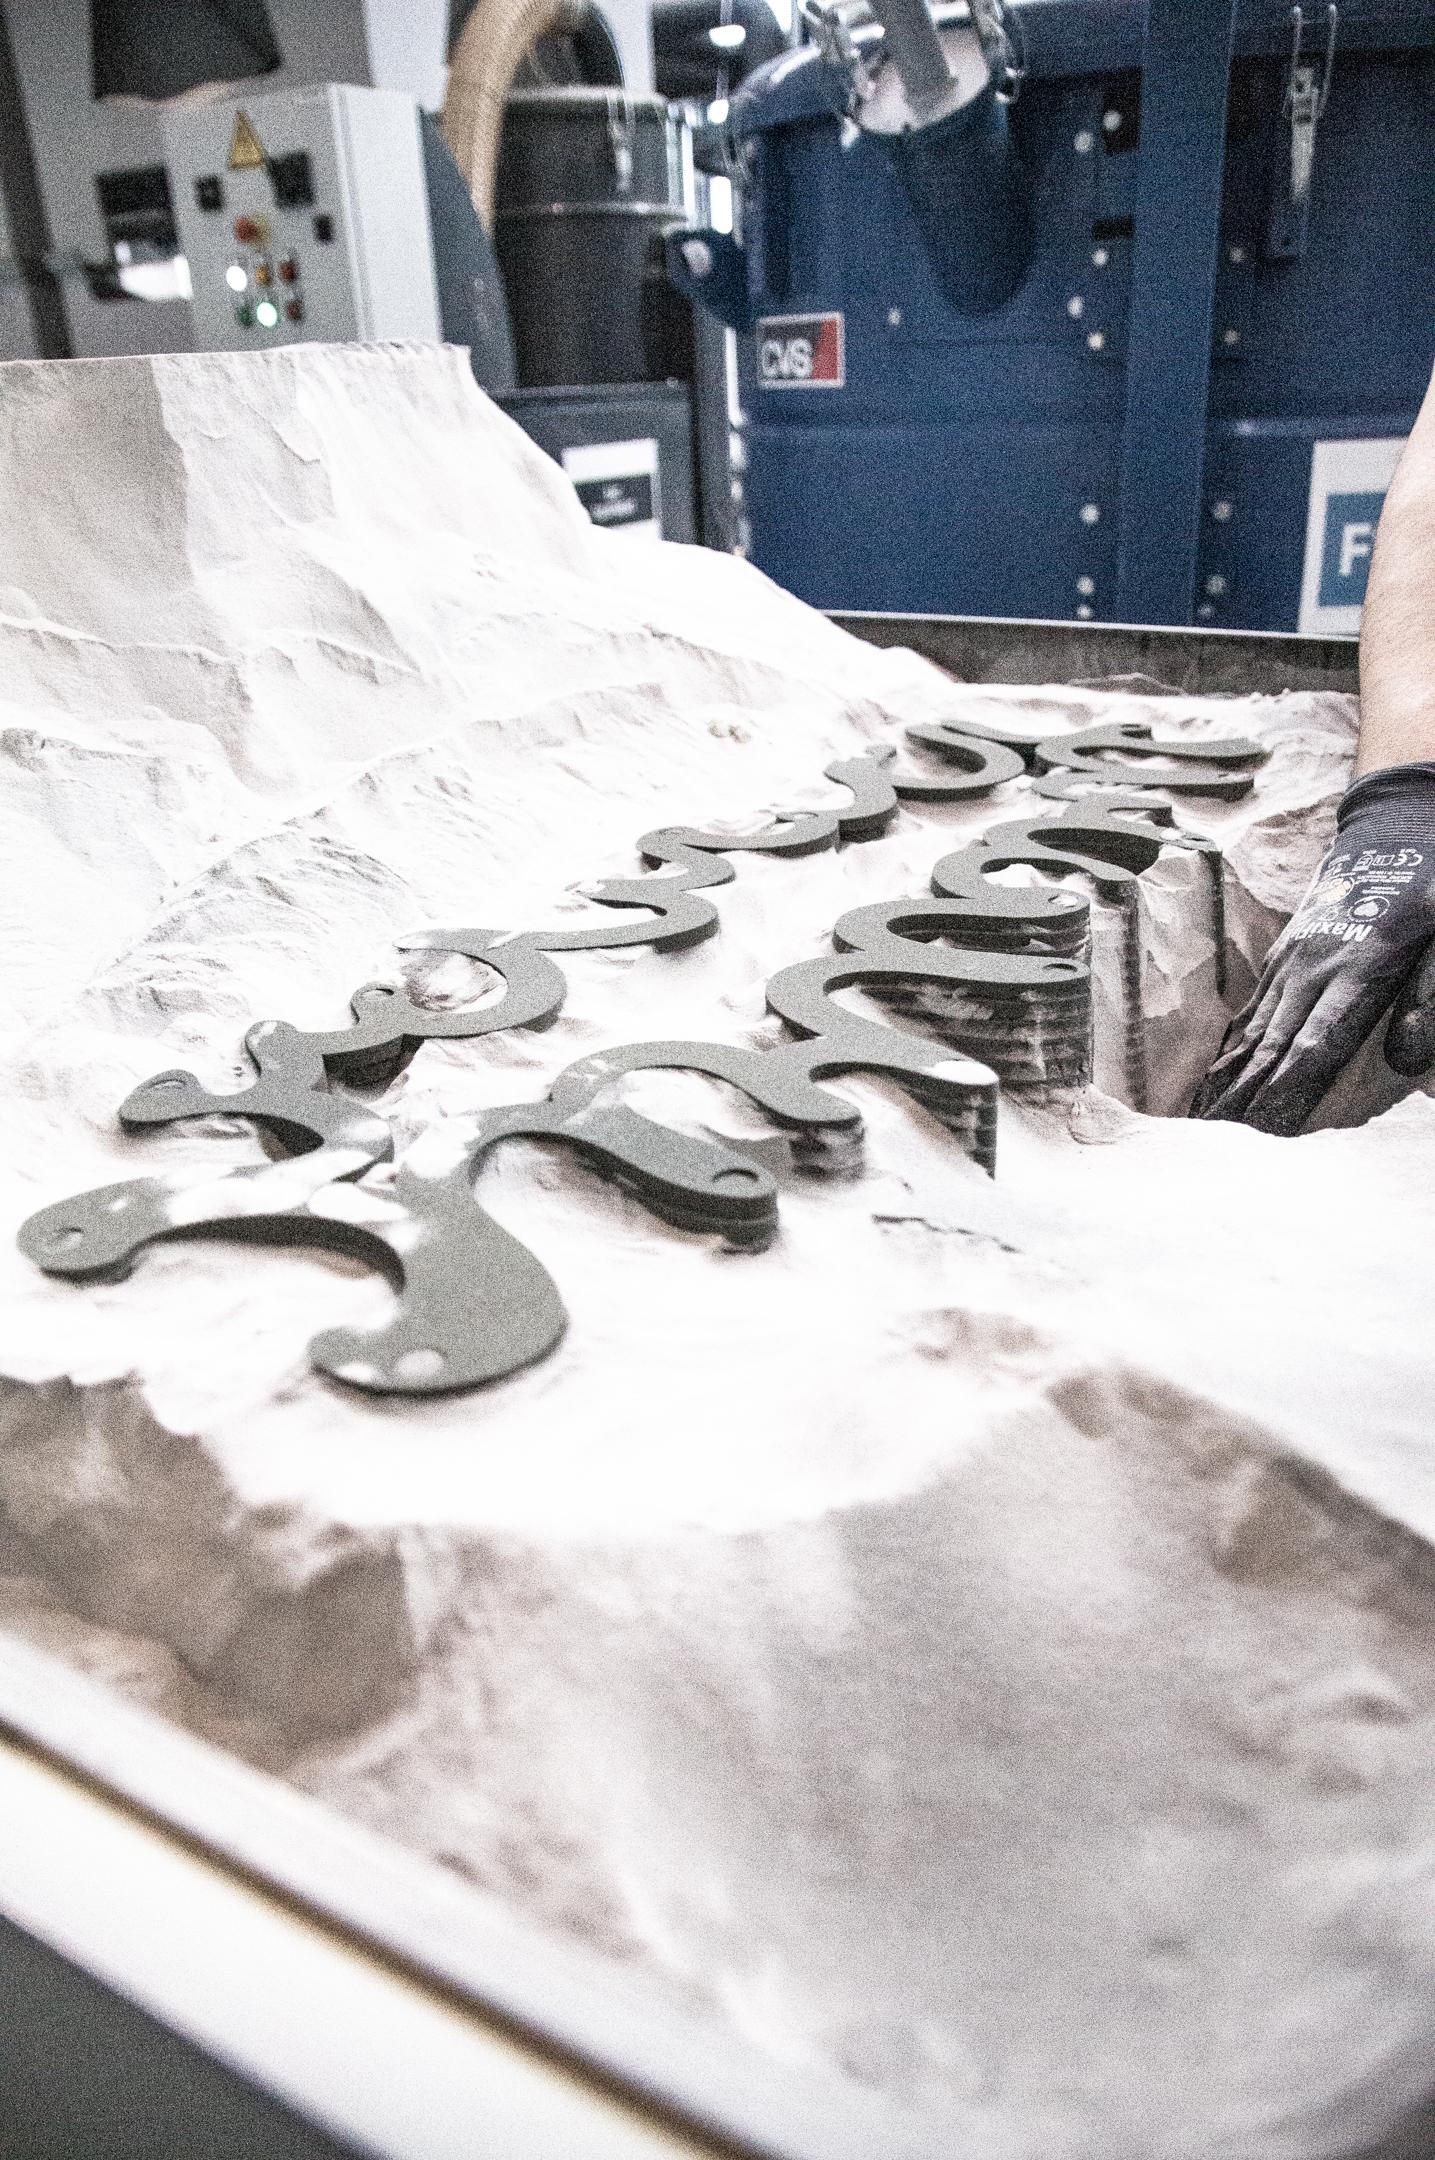 Repoussant les limites du possible, DUNE est une table basse moderne, imprimée en 3D à partir de sable de quartz noir. Belle, audacieuse et dynamique... une forme permanente émerge d'un monticule composé de millions de particules de sable.

Inspirée